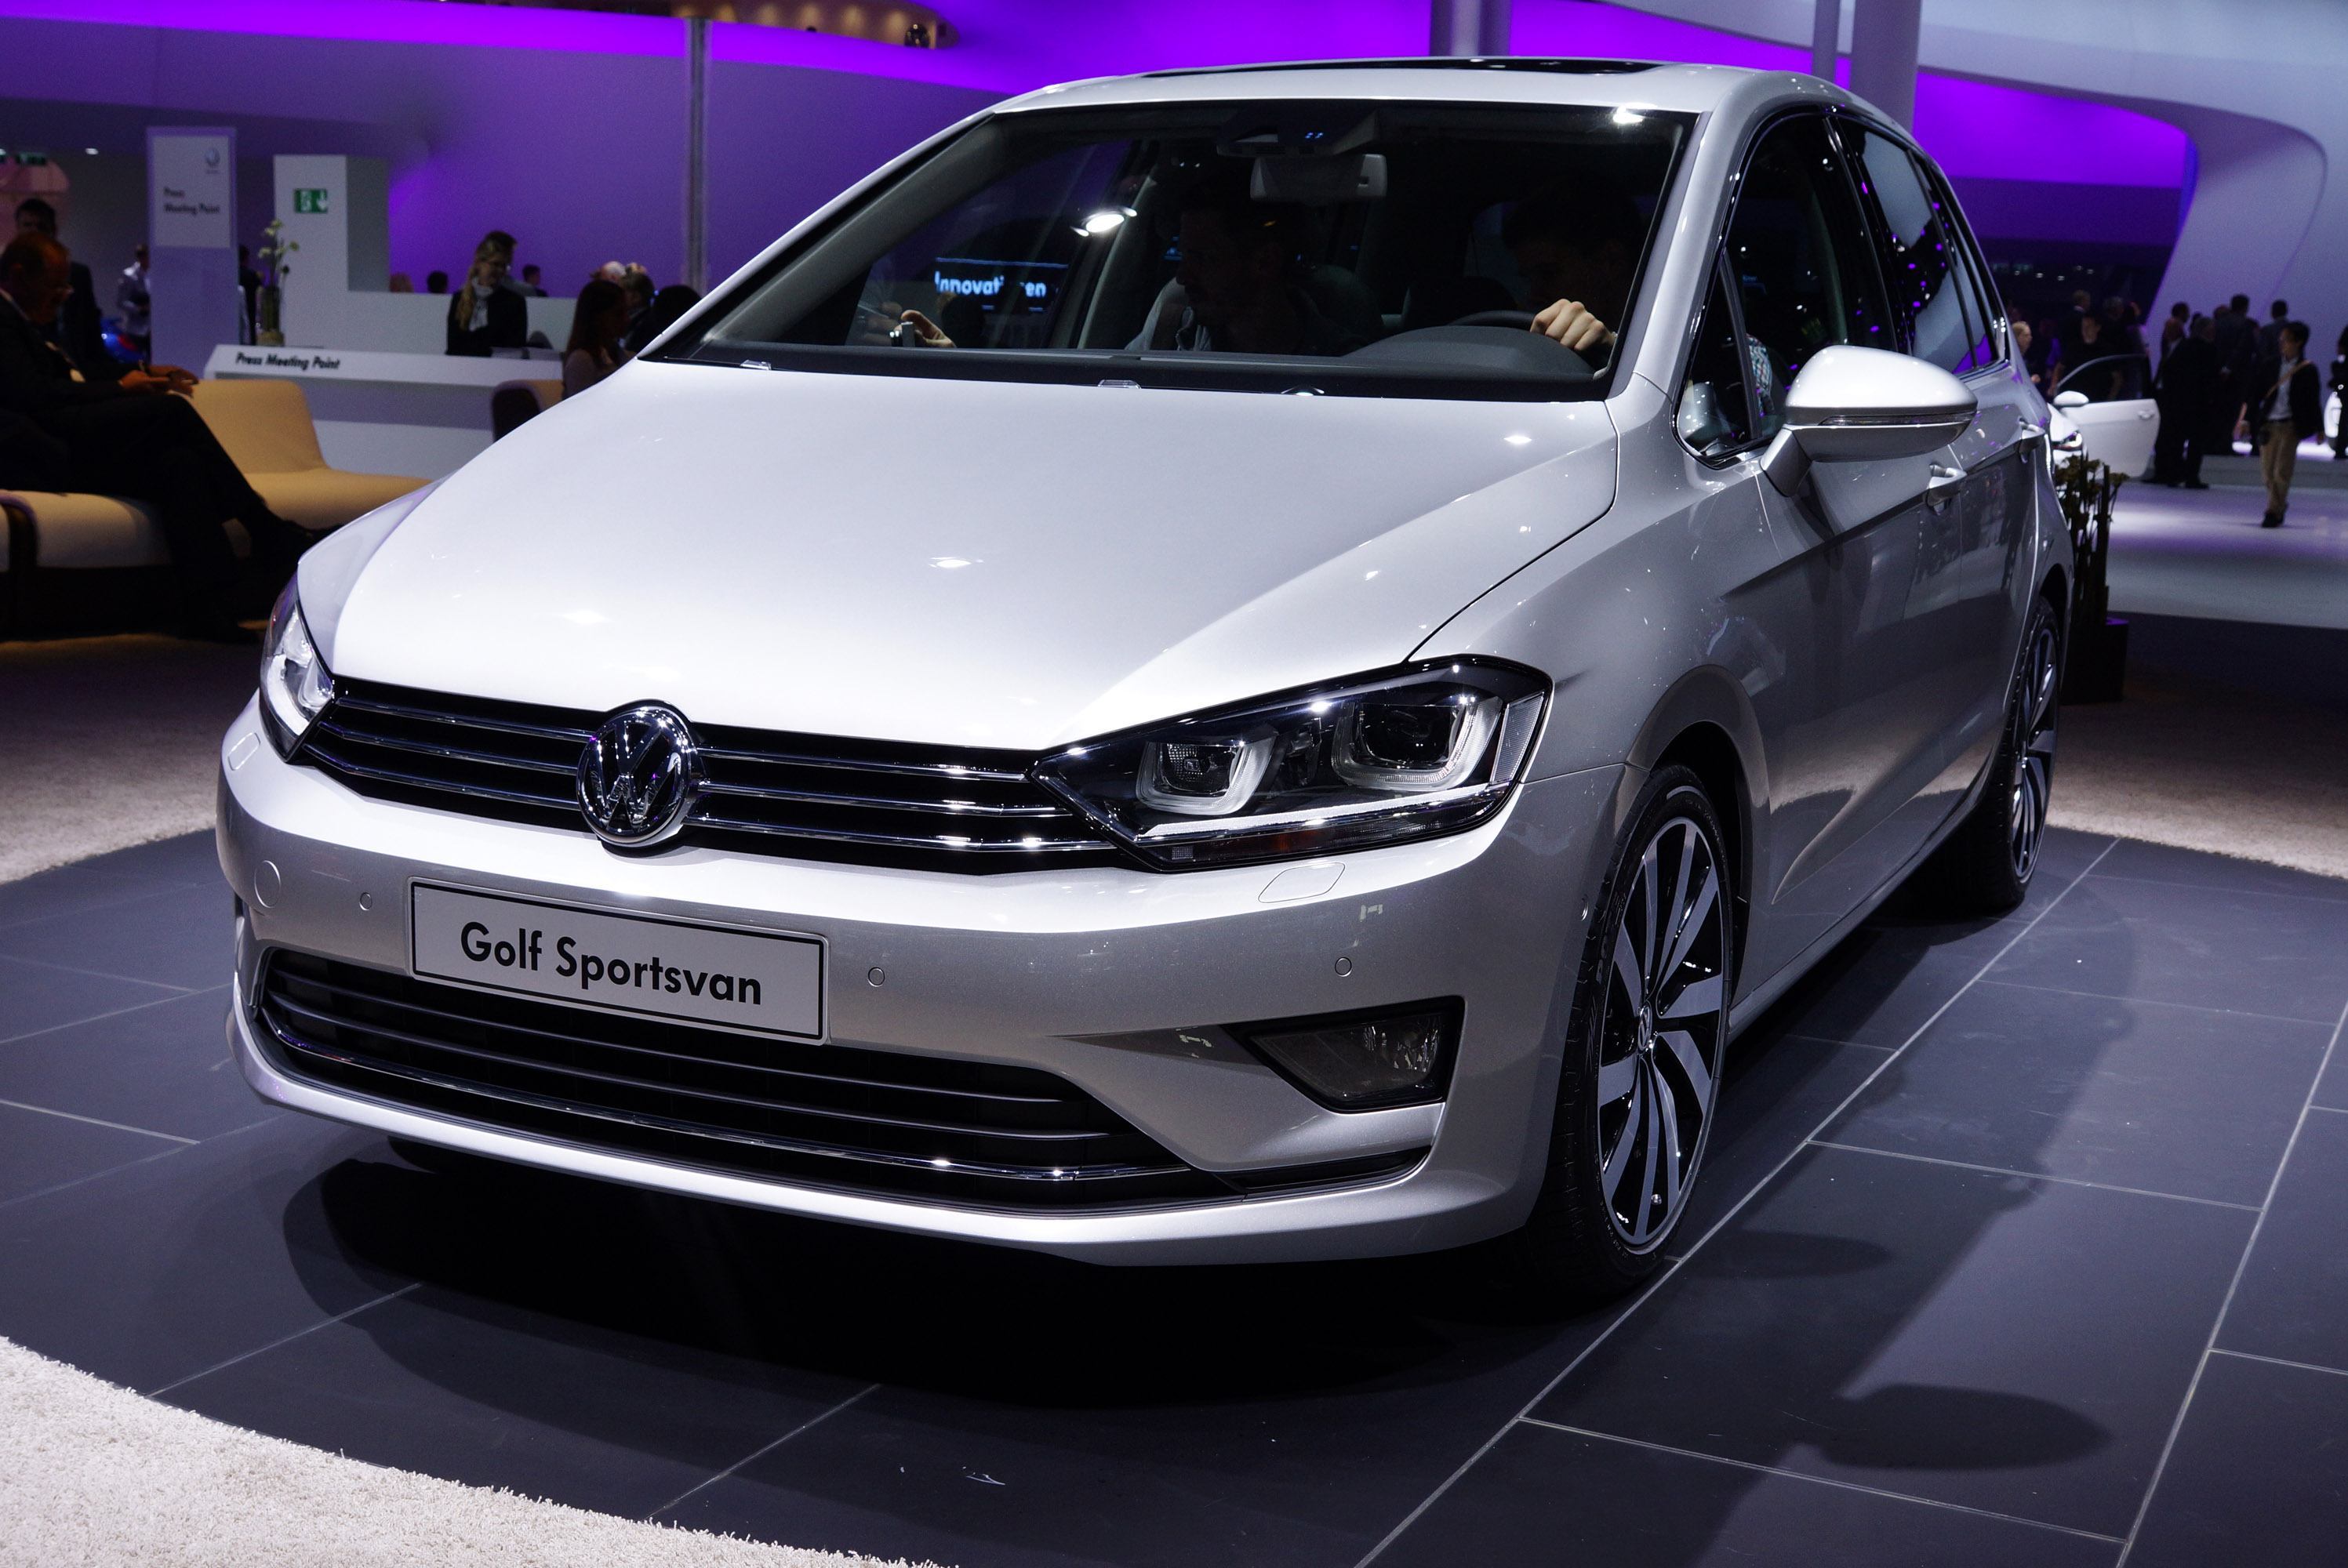 Volkswagen Golf Sportsvan Frankfurt